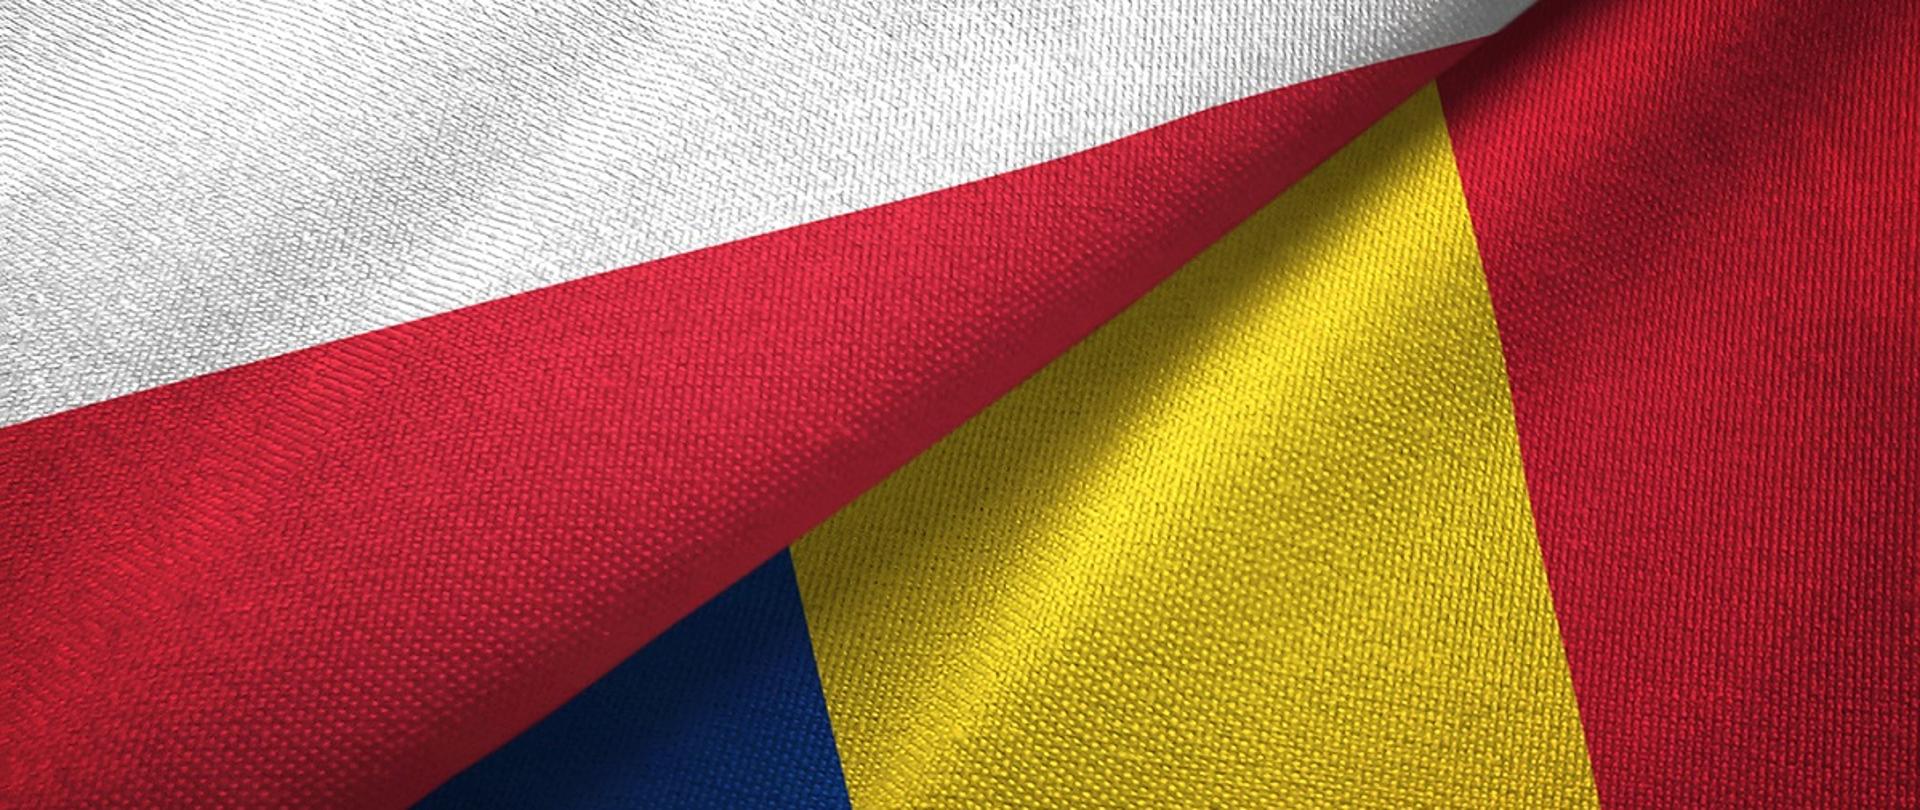 Flagi Polski i Rumunii razem, duże zbliżenie na teksturę tkaniny